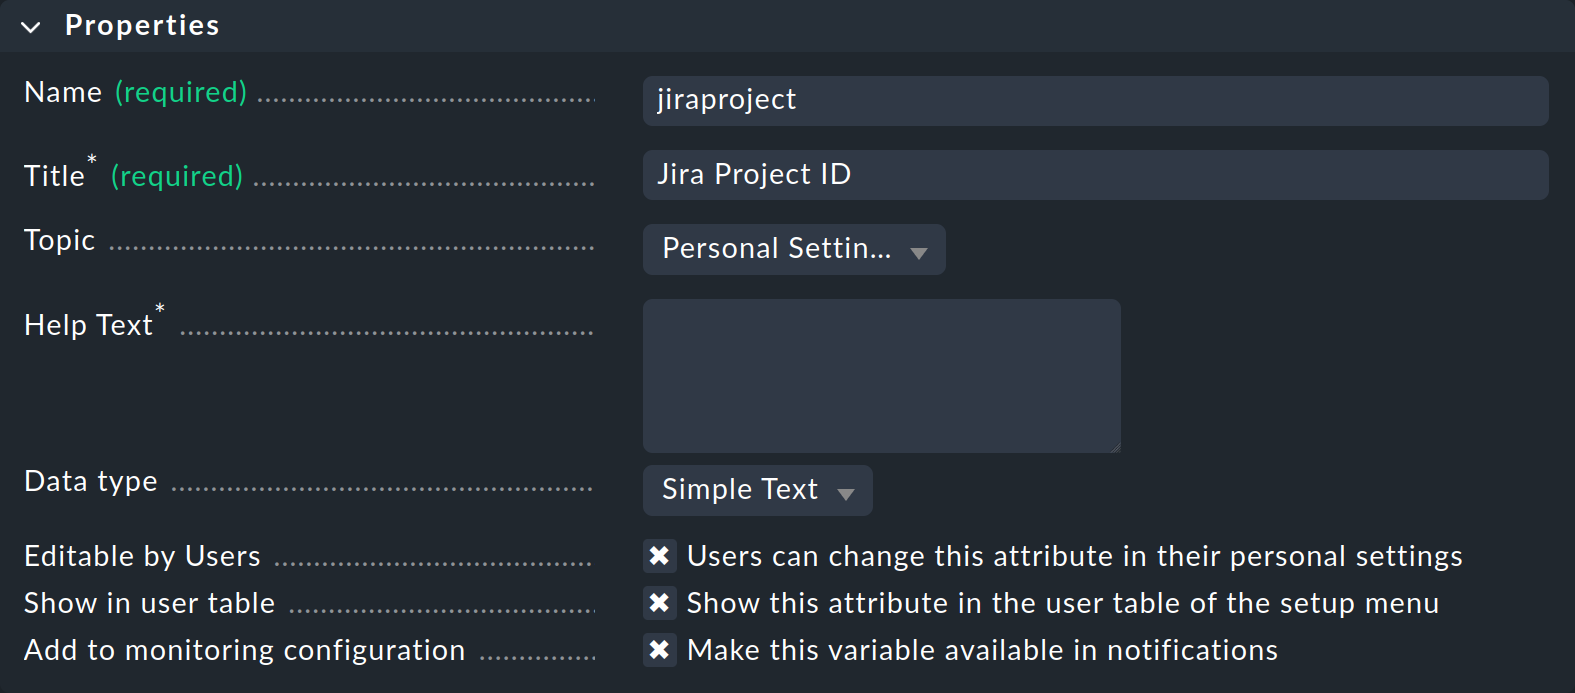 Ein benutzerdefinierter Attribut für die Jira Project ID.